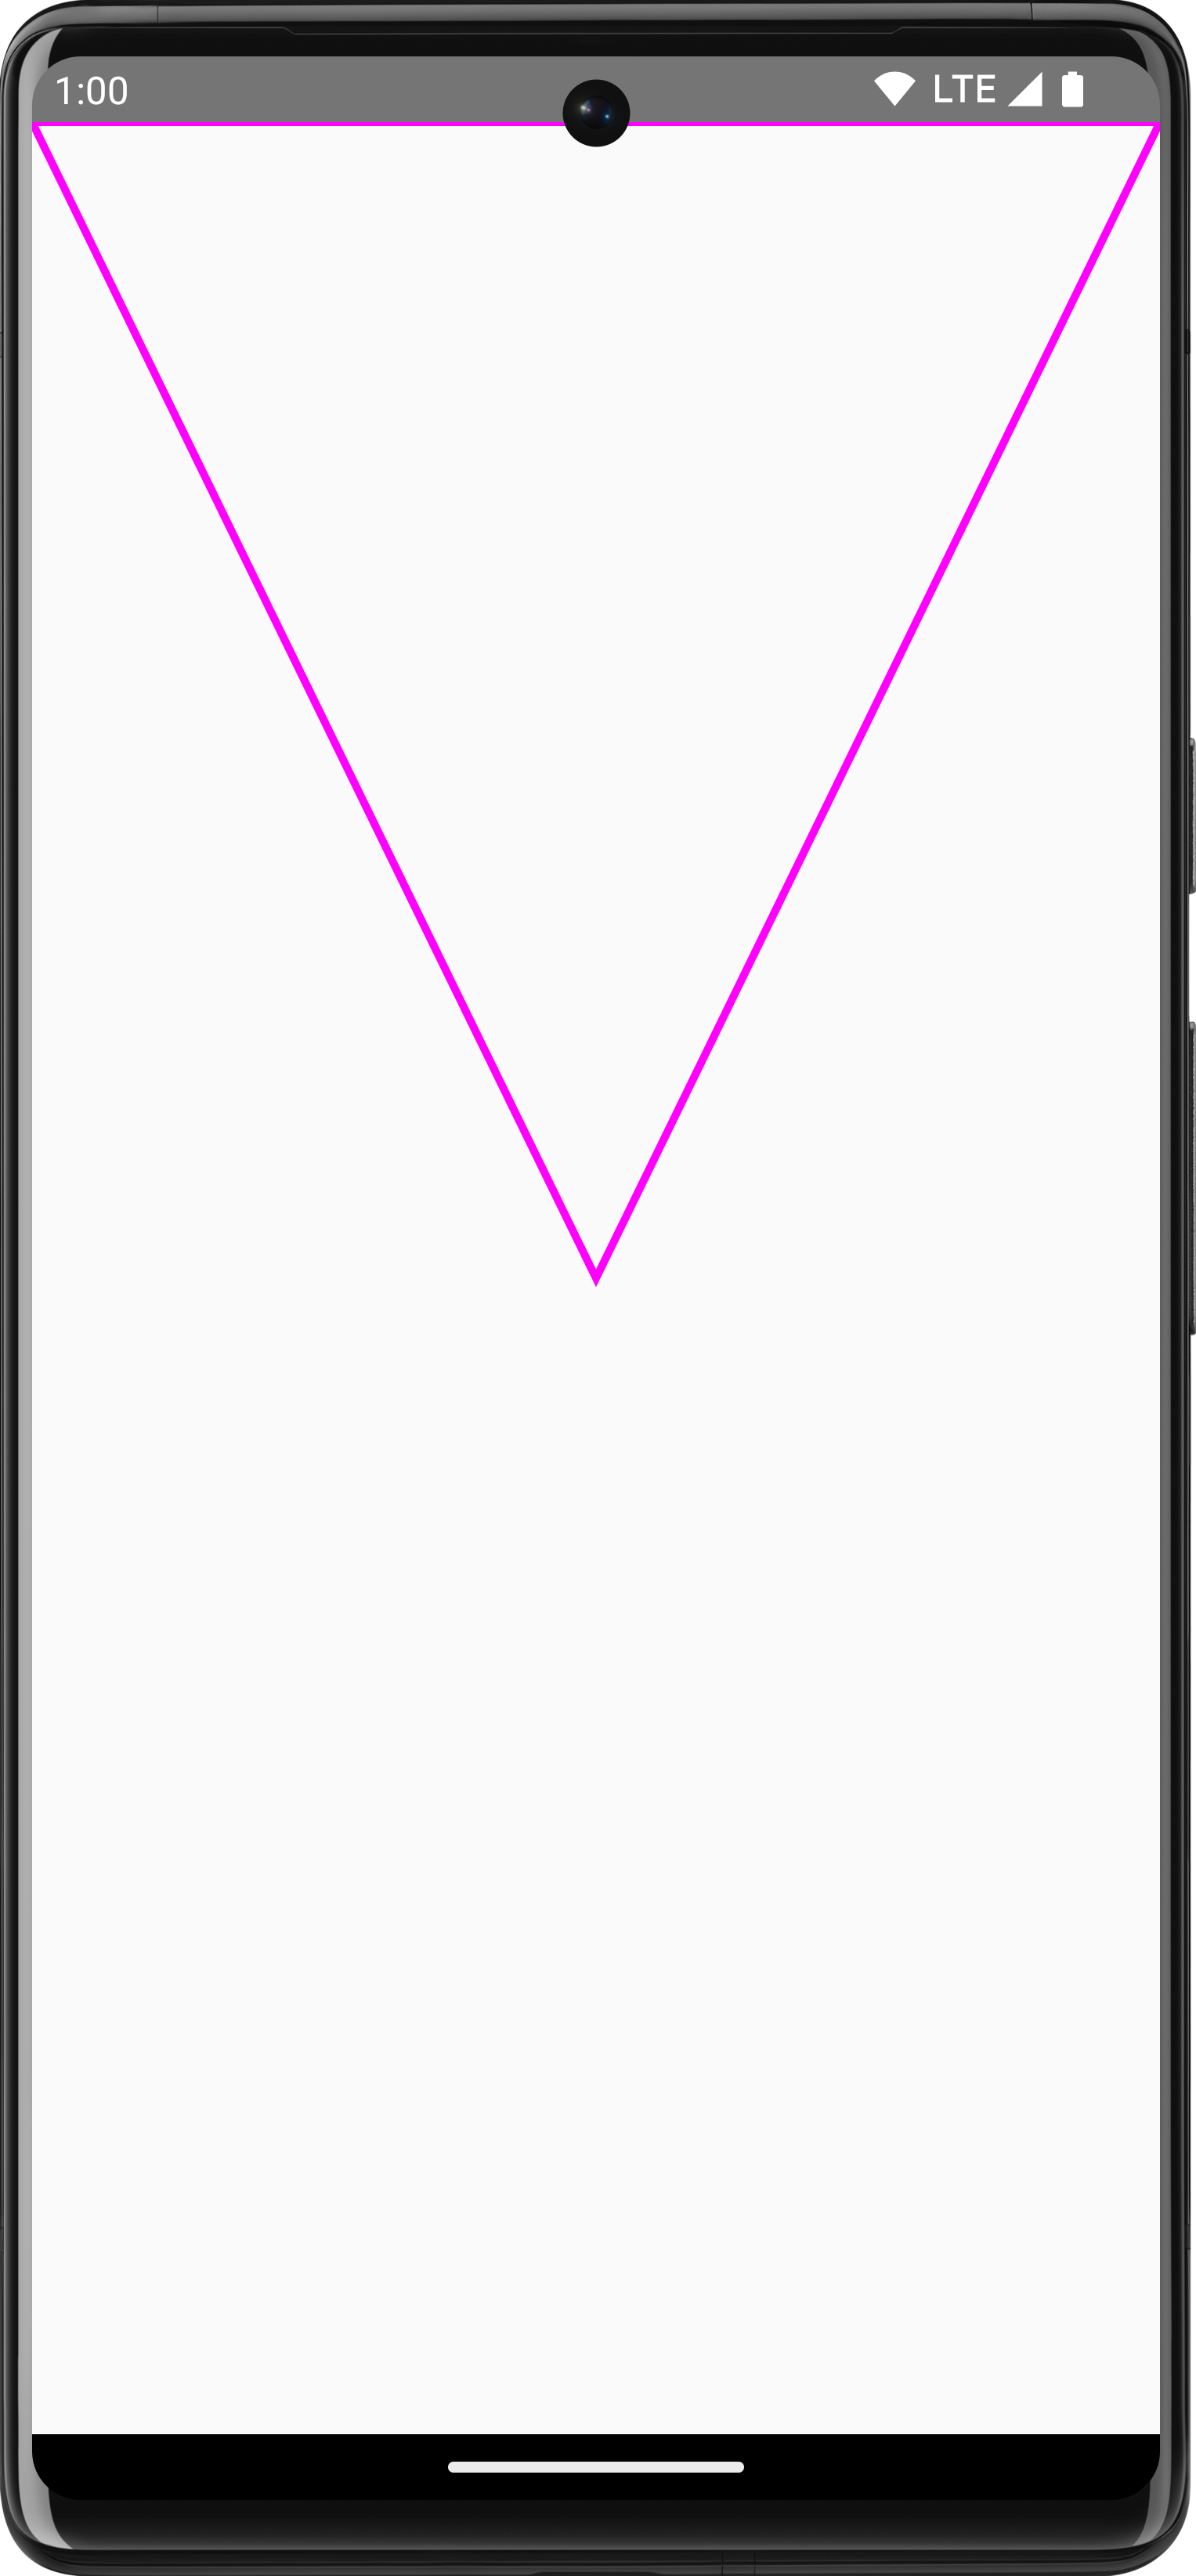 Odwrócony fioletowy trójkąt ścieżki narysowany w funkcji Utwórz